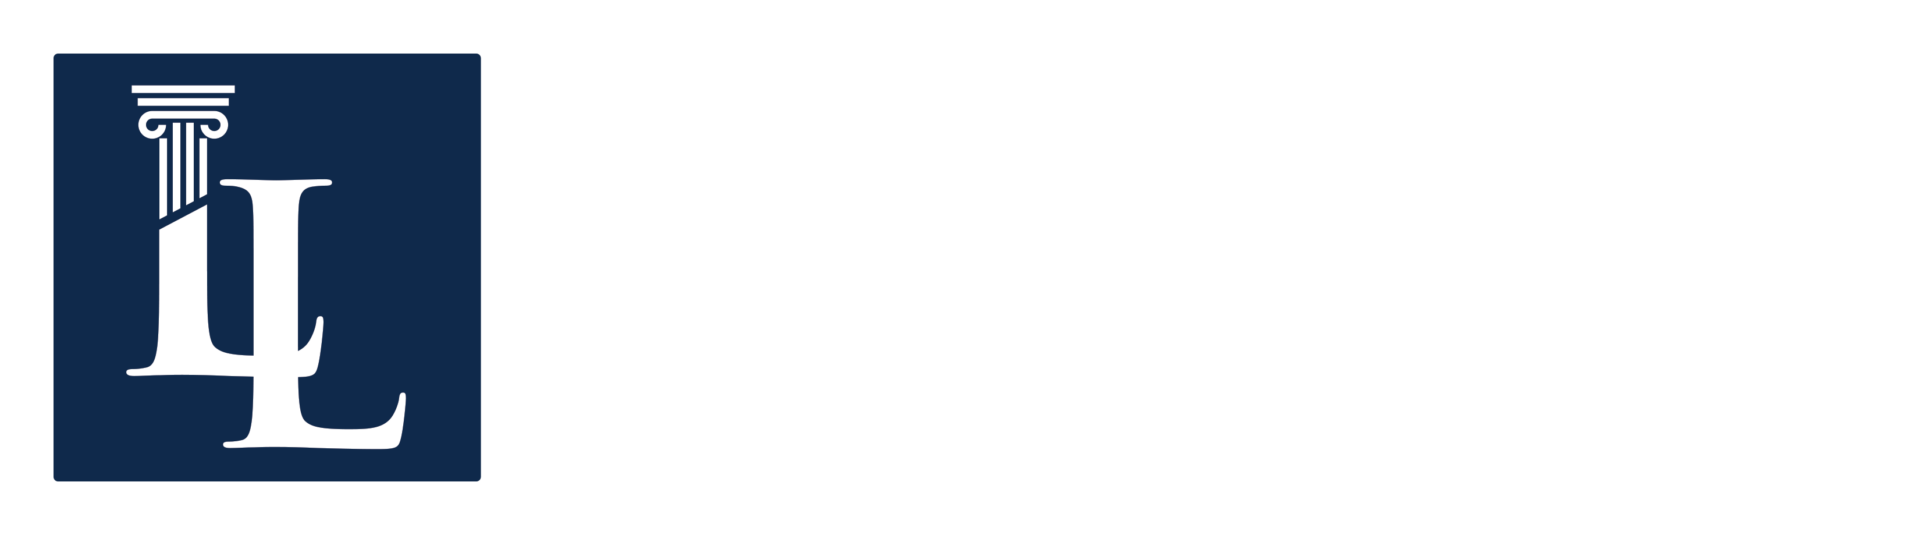 Larsen Law PLLC